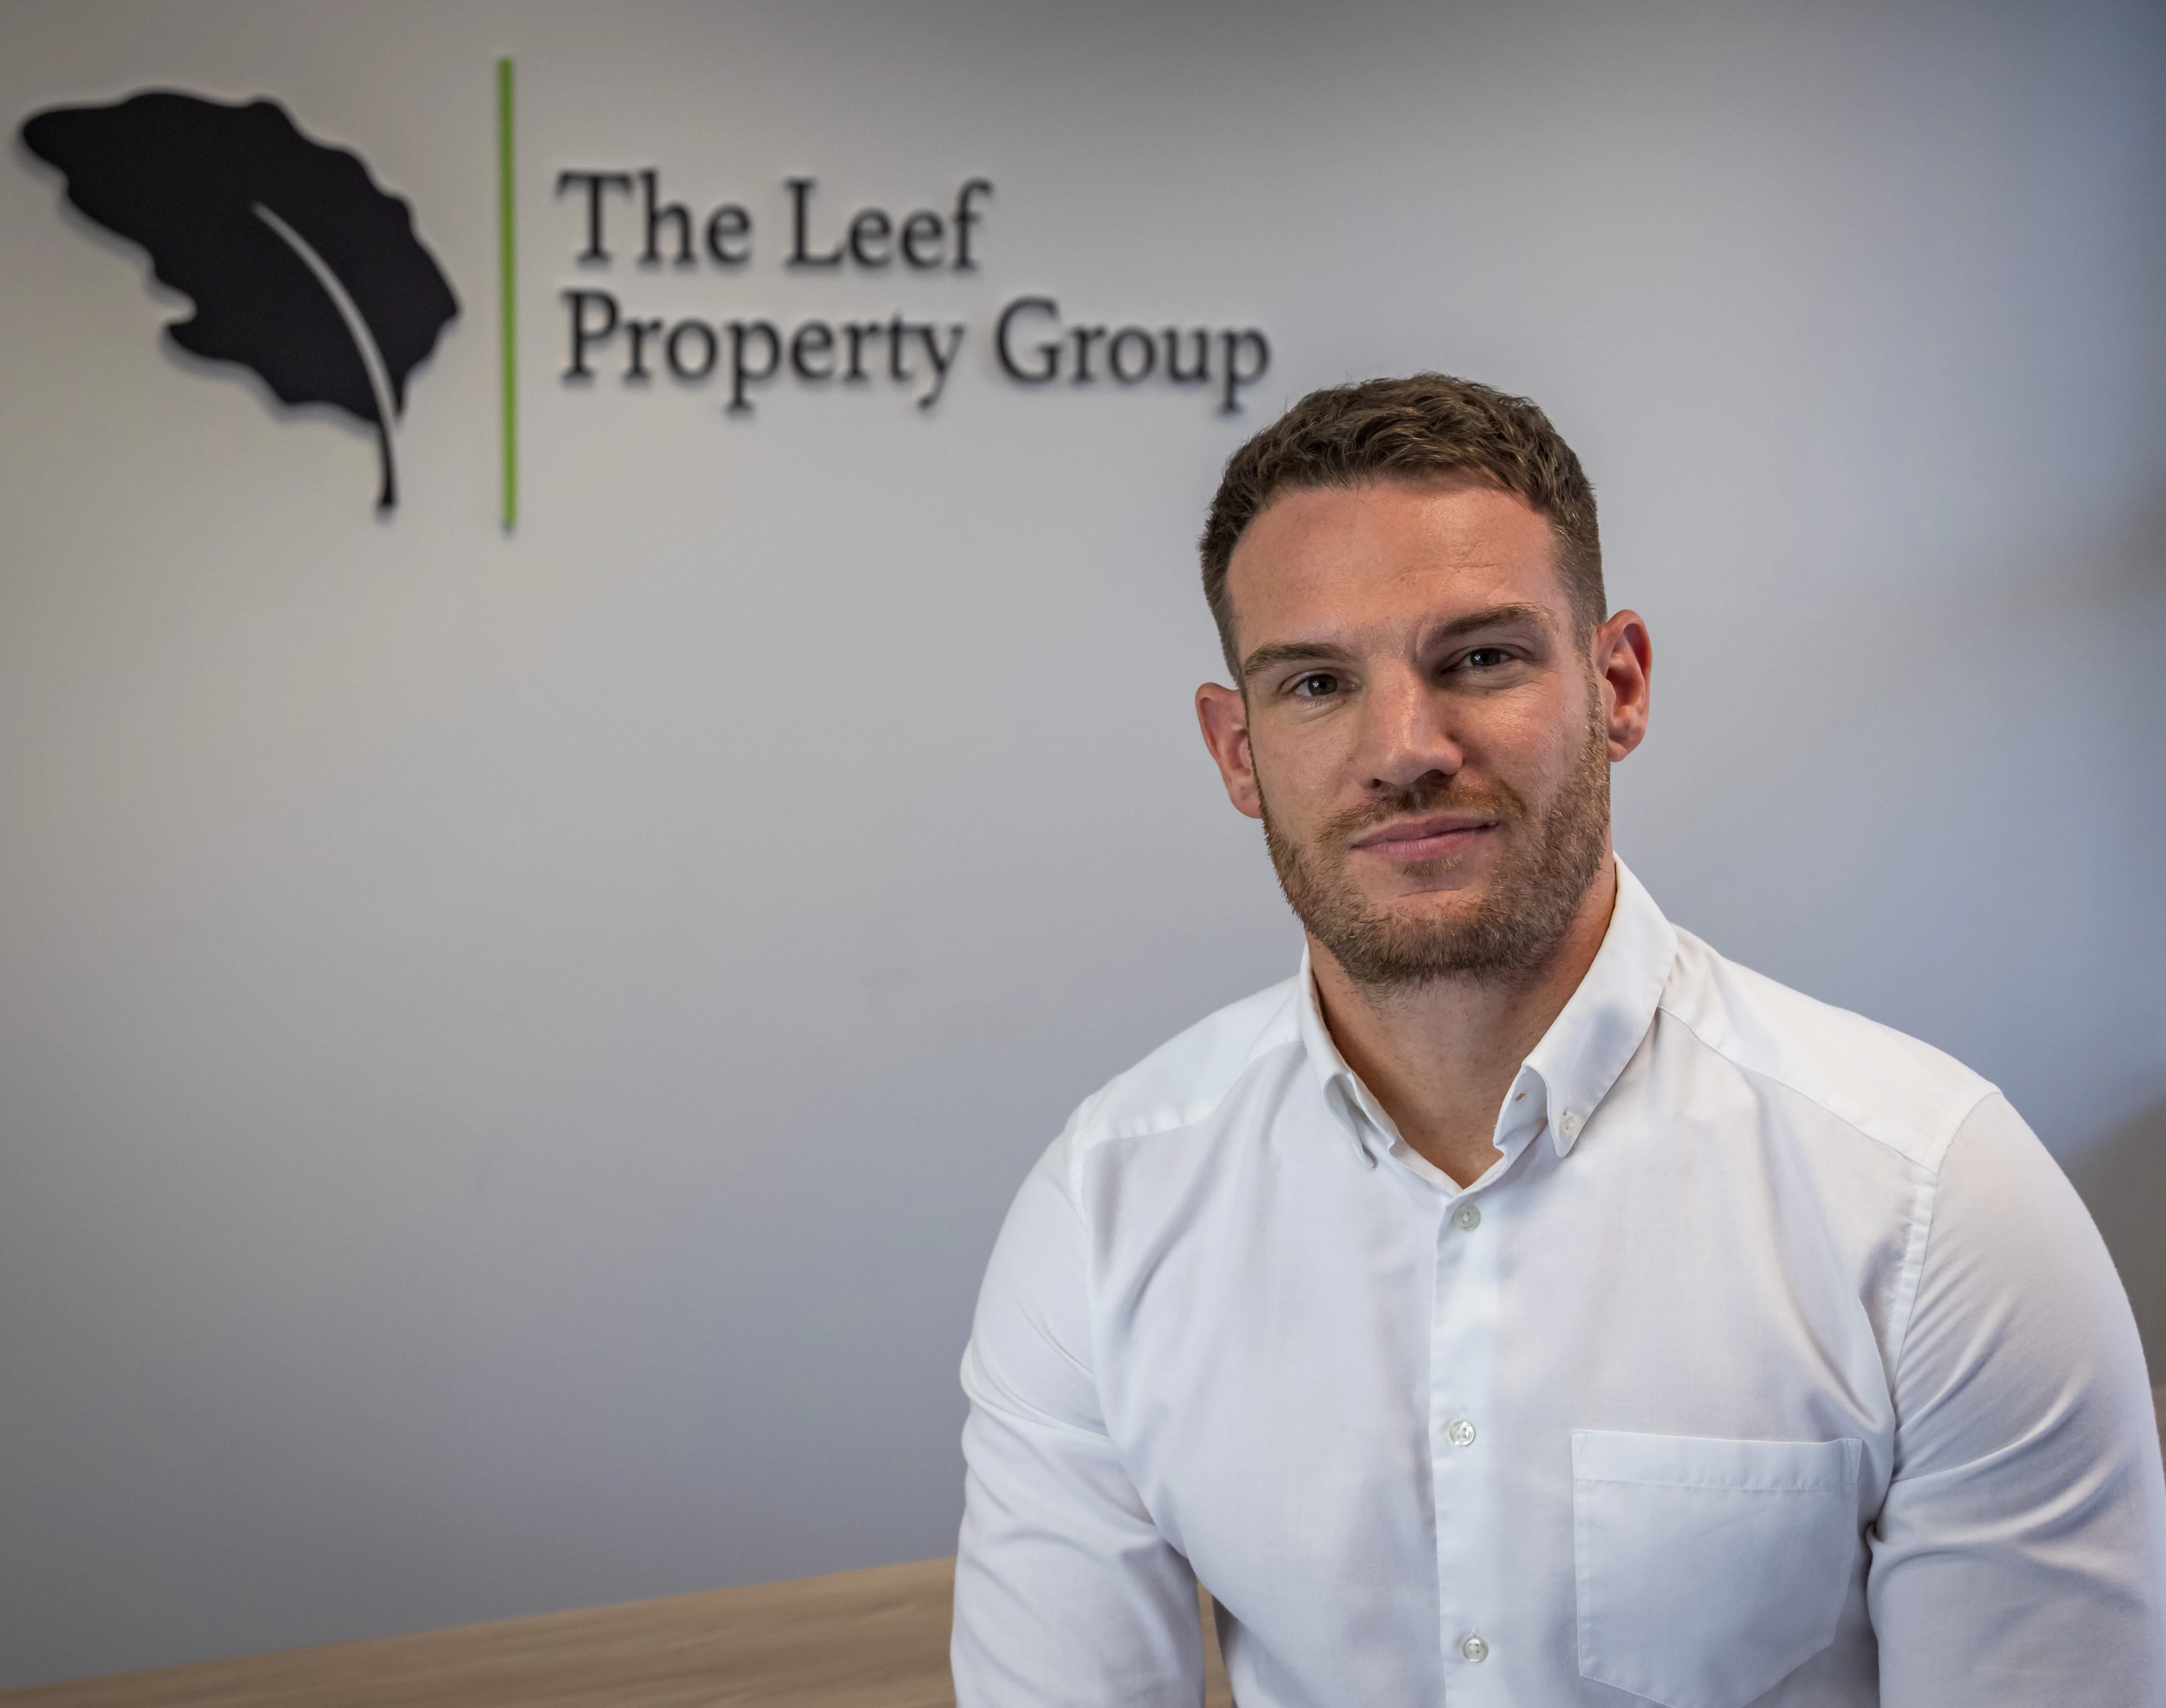 Joe Knowles, The Leef Property Group